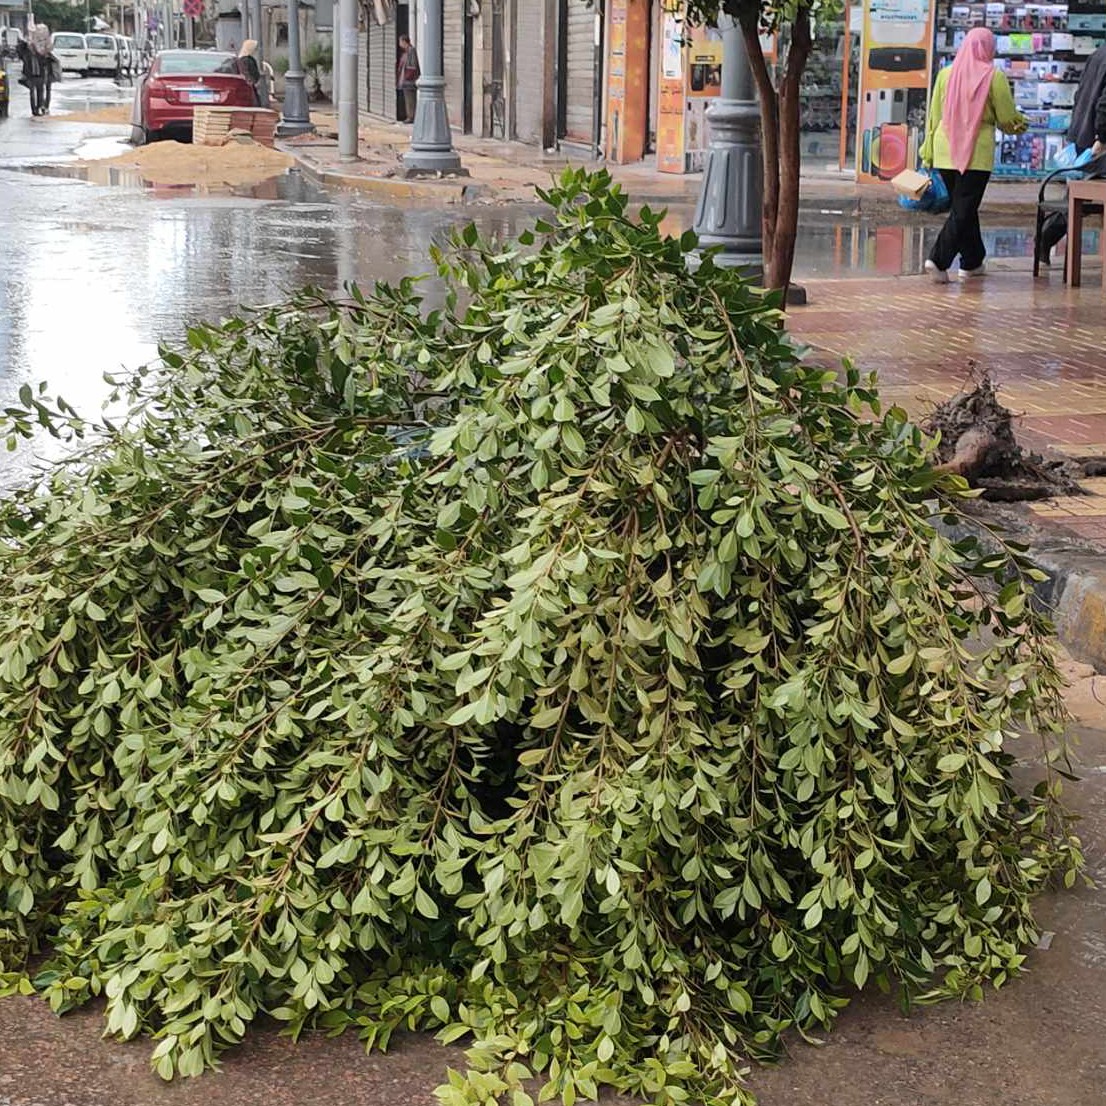 سقوط شجرة بسبب الامطار والرياح بوسط الإسكندرية دون إصابات